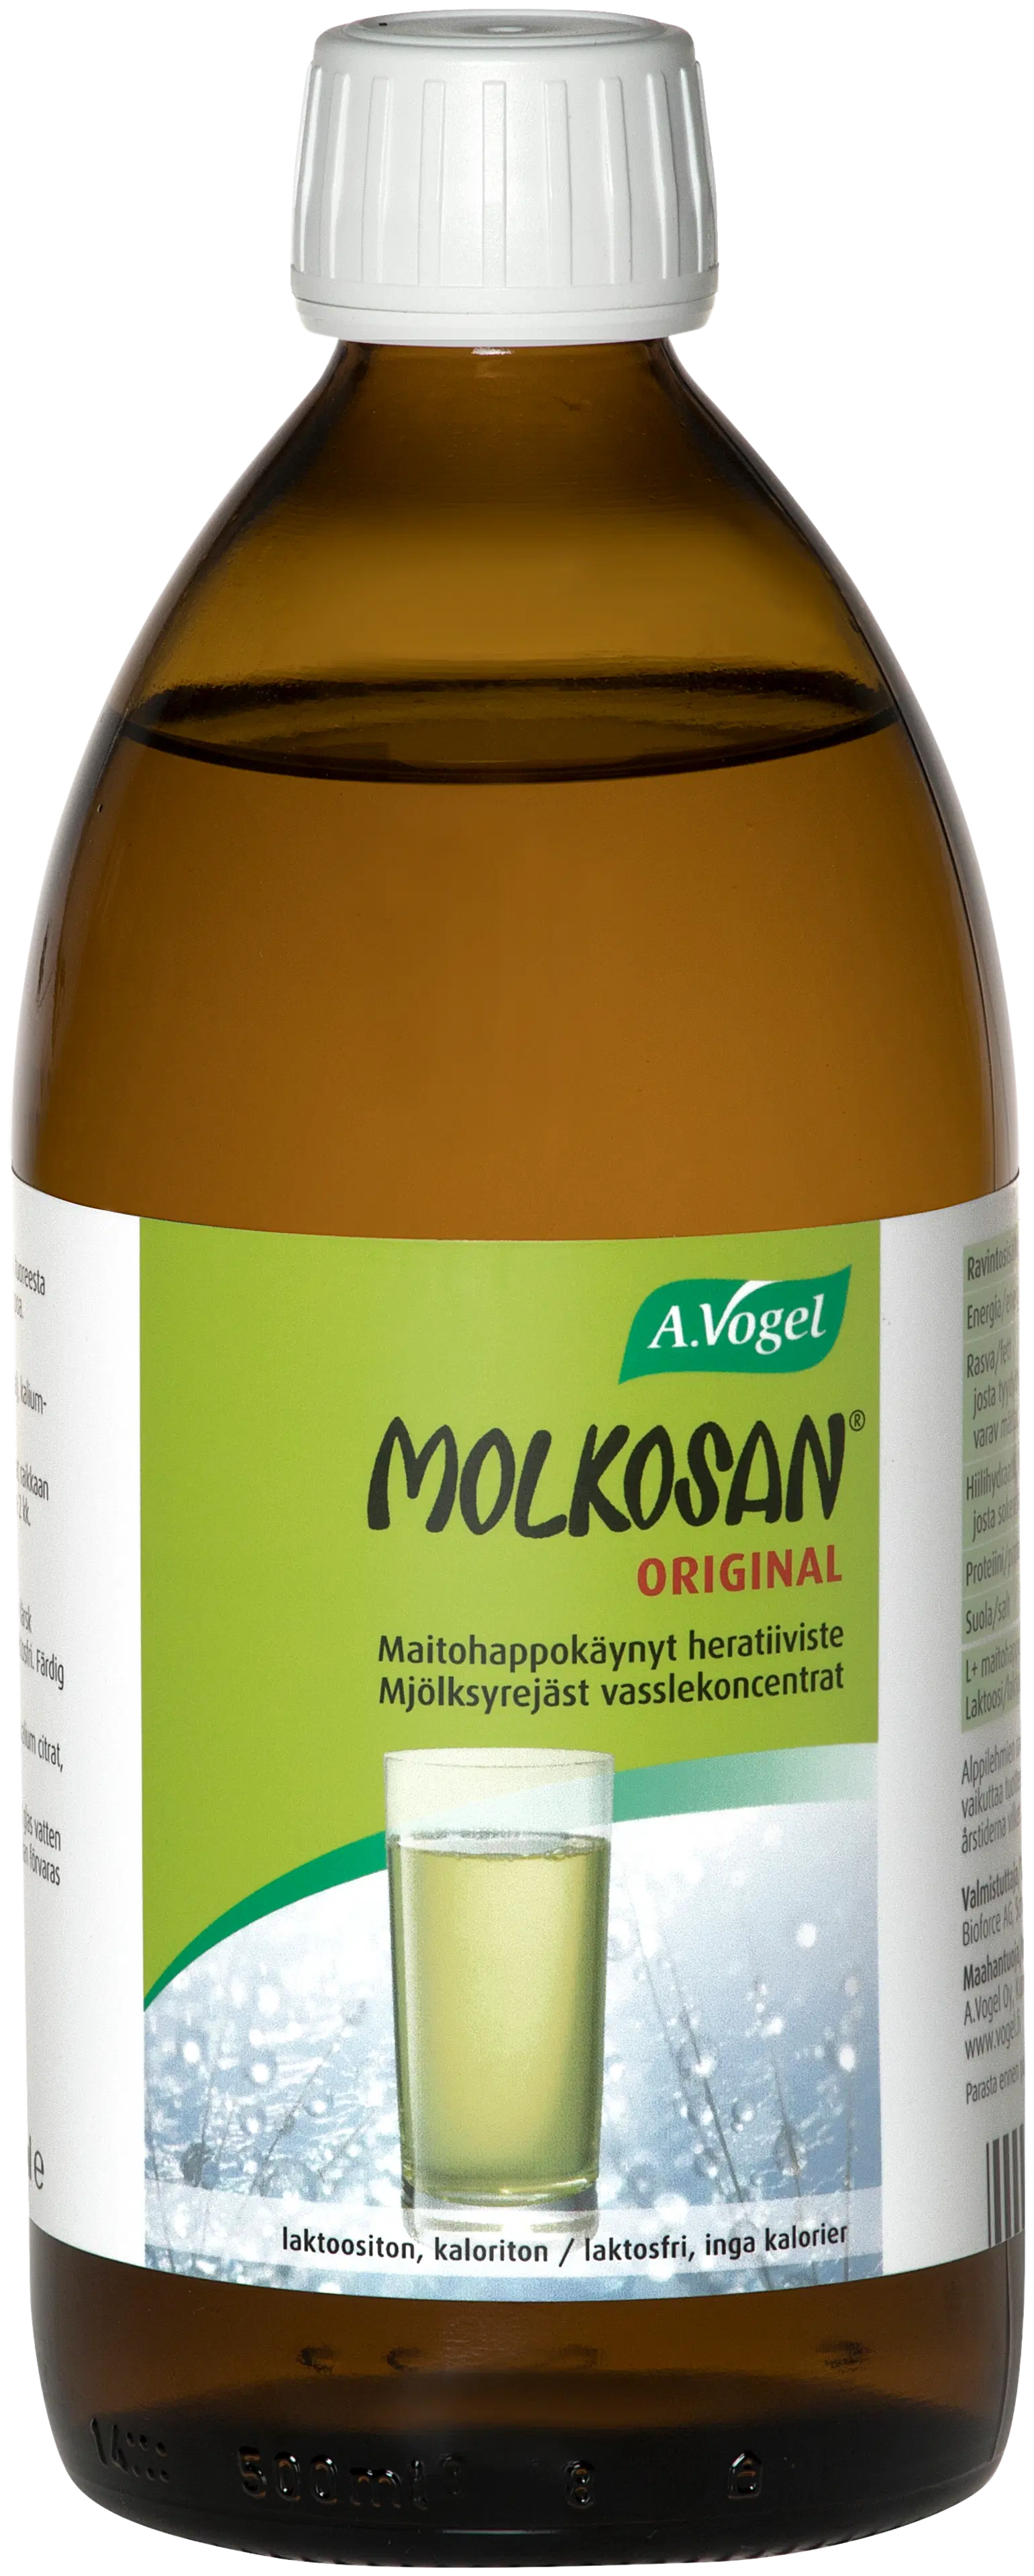 Molkosan® Original 200ml maitohappokäynyt heratiiviste